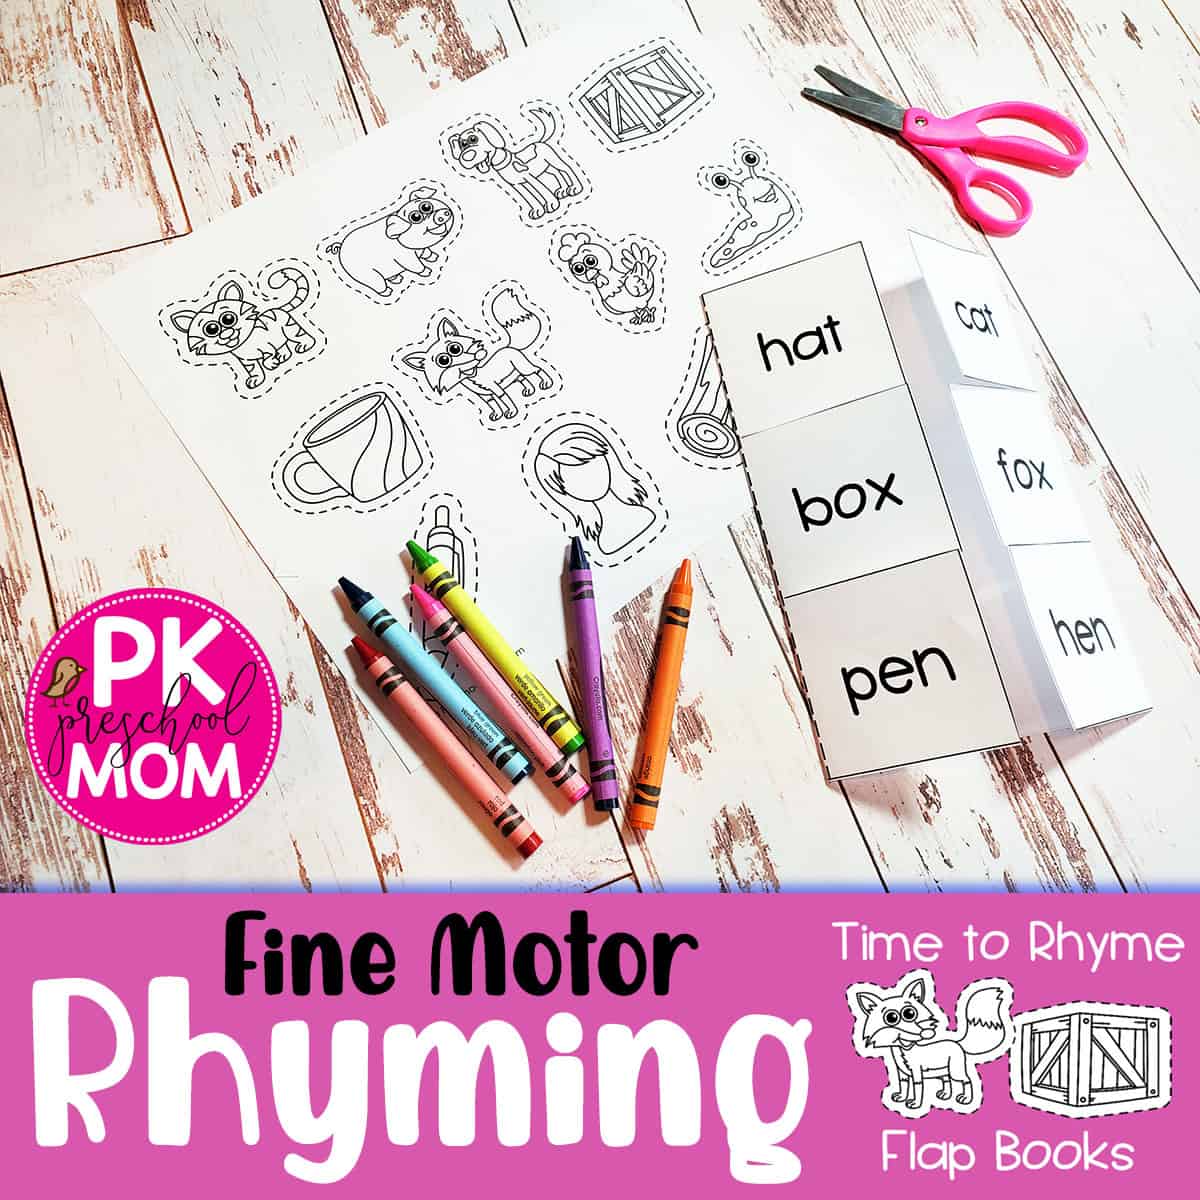 rhyming-activities-for-preschool-preschool-mom